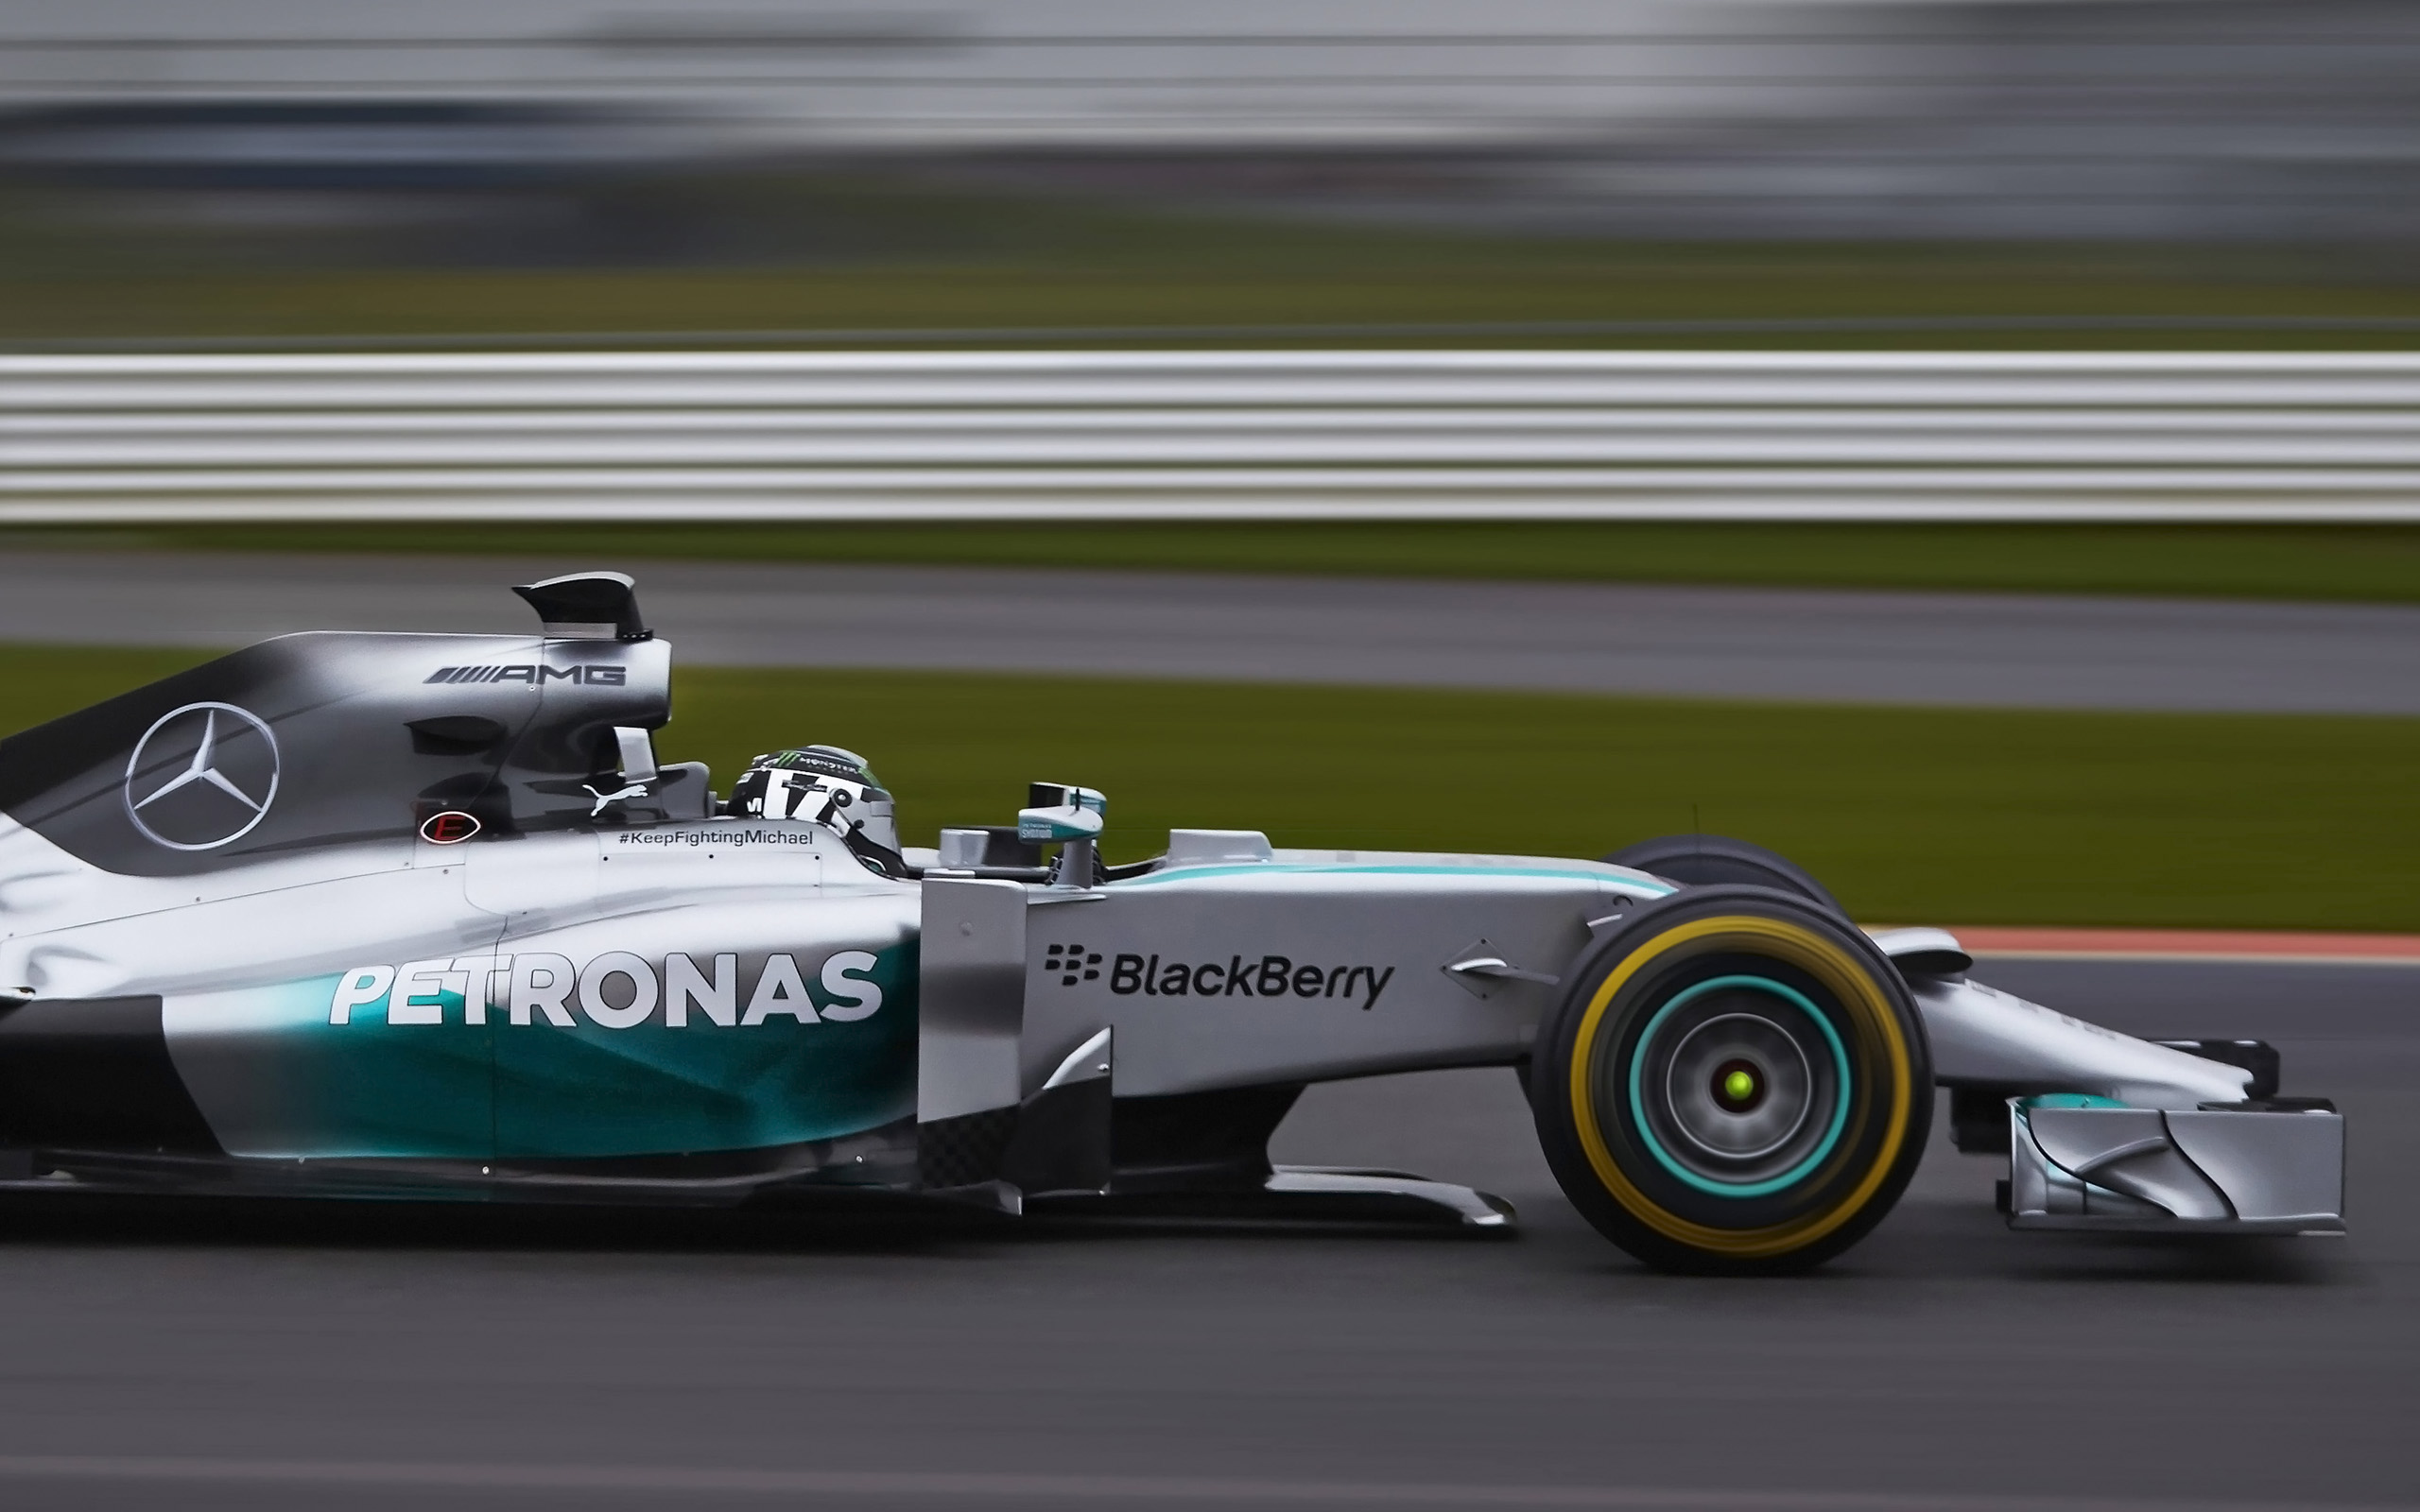 2014 Mercedes Amg Petronas F1 W05 Wallpaper Hd Car - Formula 1 Mercedes Car - HD Wallpaper 